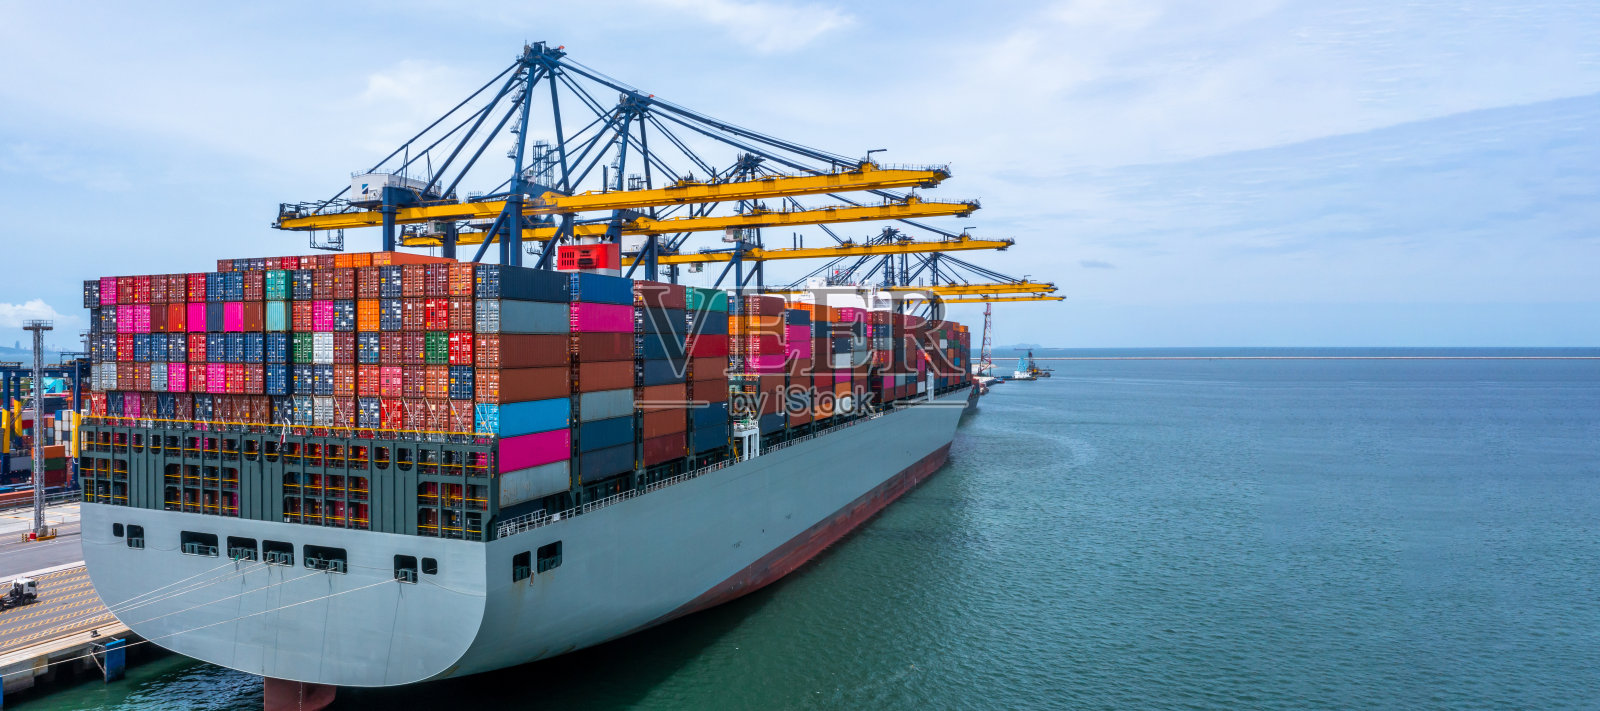 集装箱船舶全球业务公司集装箱船舶进出口物流运输,集装箱船舶货物货运海运国际海运。照片摄影